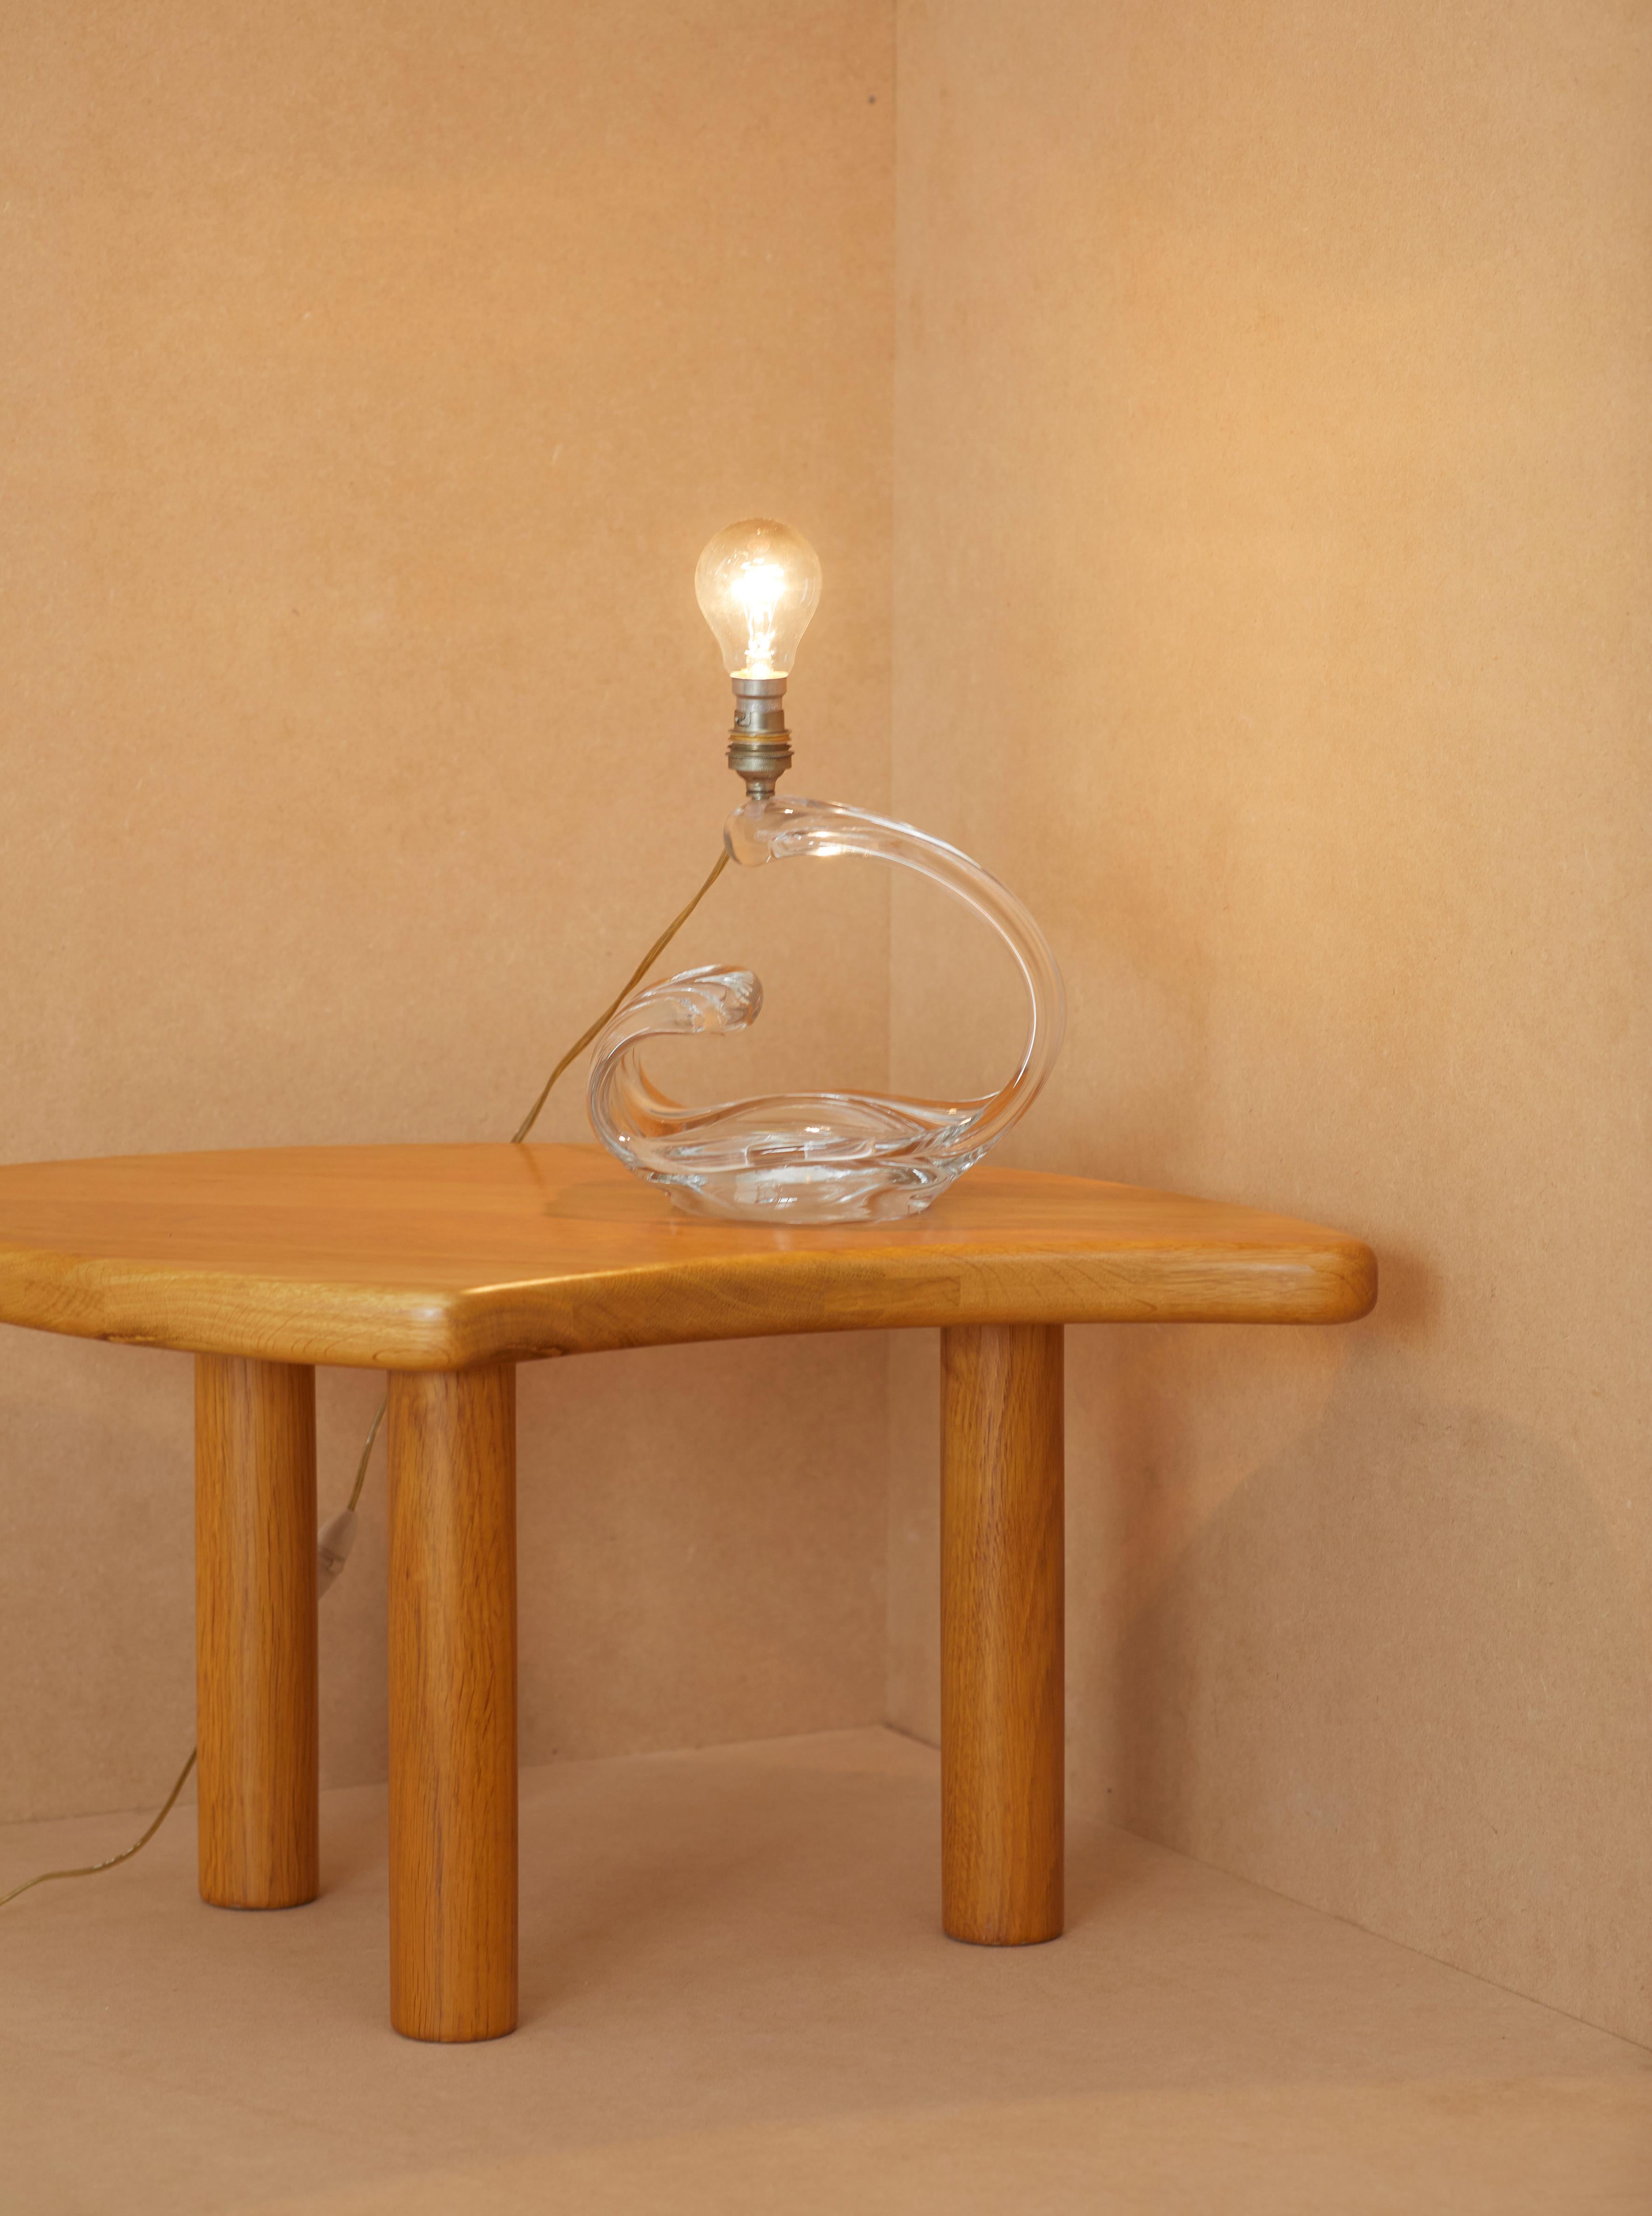 Lampe de table en cristal translucide de la Maison Daum, France, c. 1960. 

Depuis 1878, Daum, maître verrier légendaire, entretient depuis plus d'un siècle une relation amoureuse avec les plus grands artistes de son temps, donnant à leurs œuvres